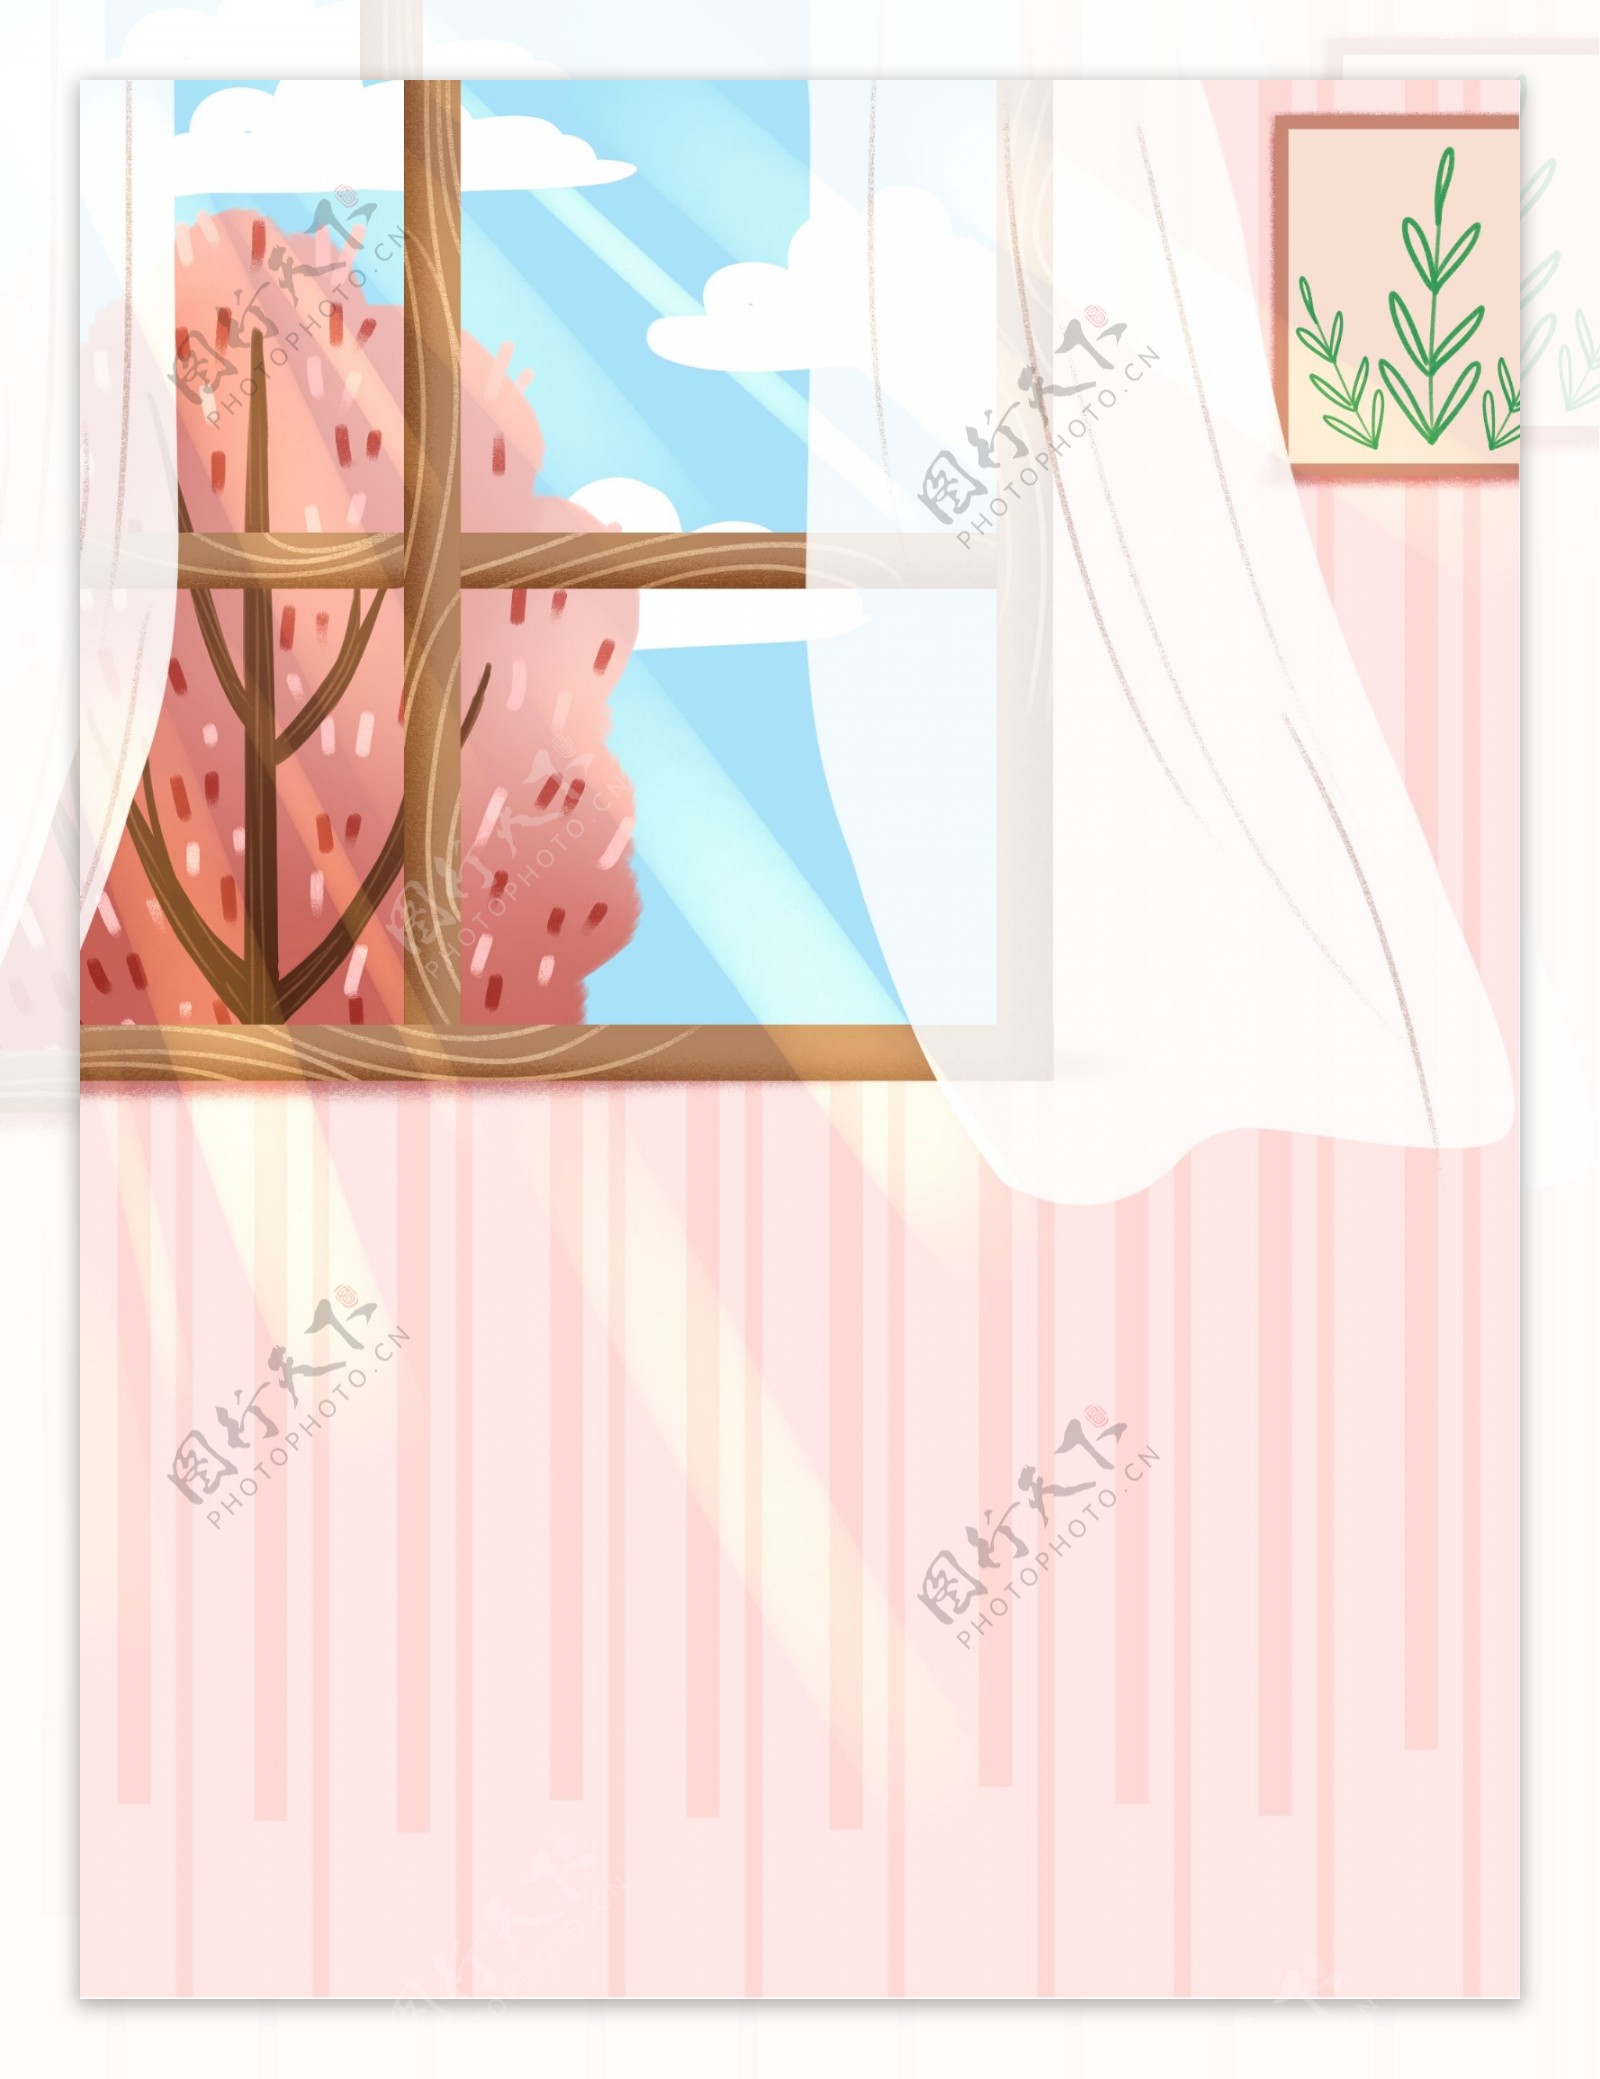 夏季粉色窗户居家背景设计